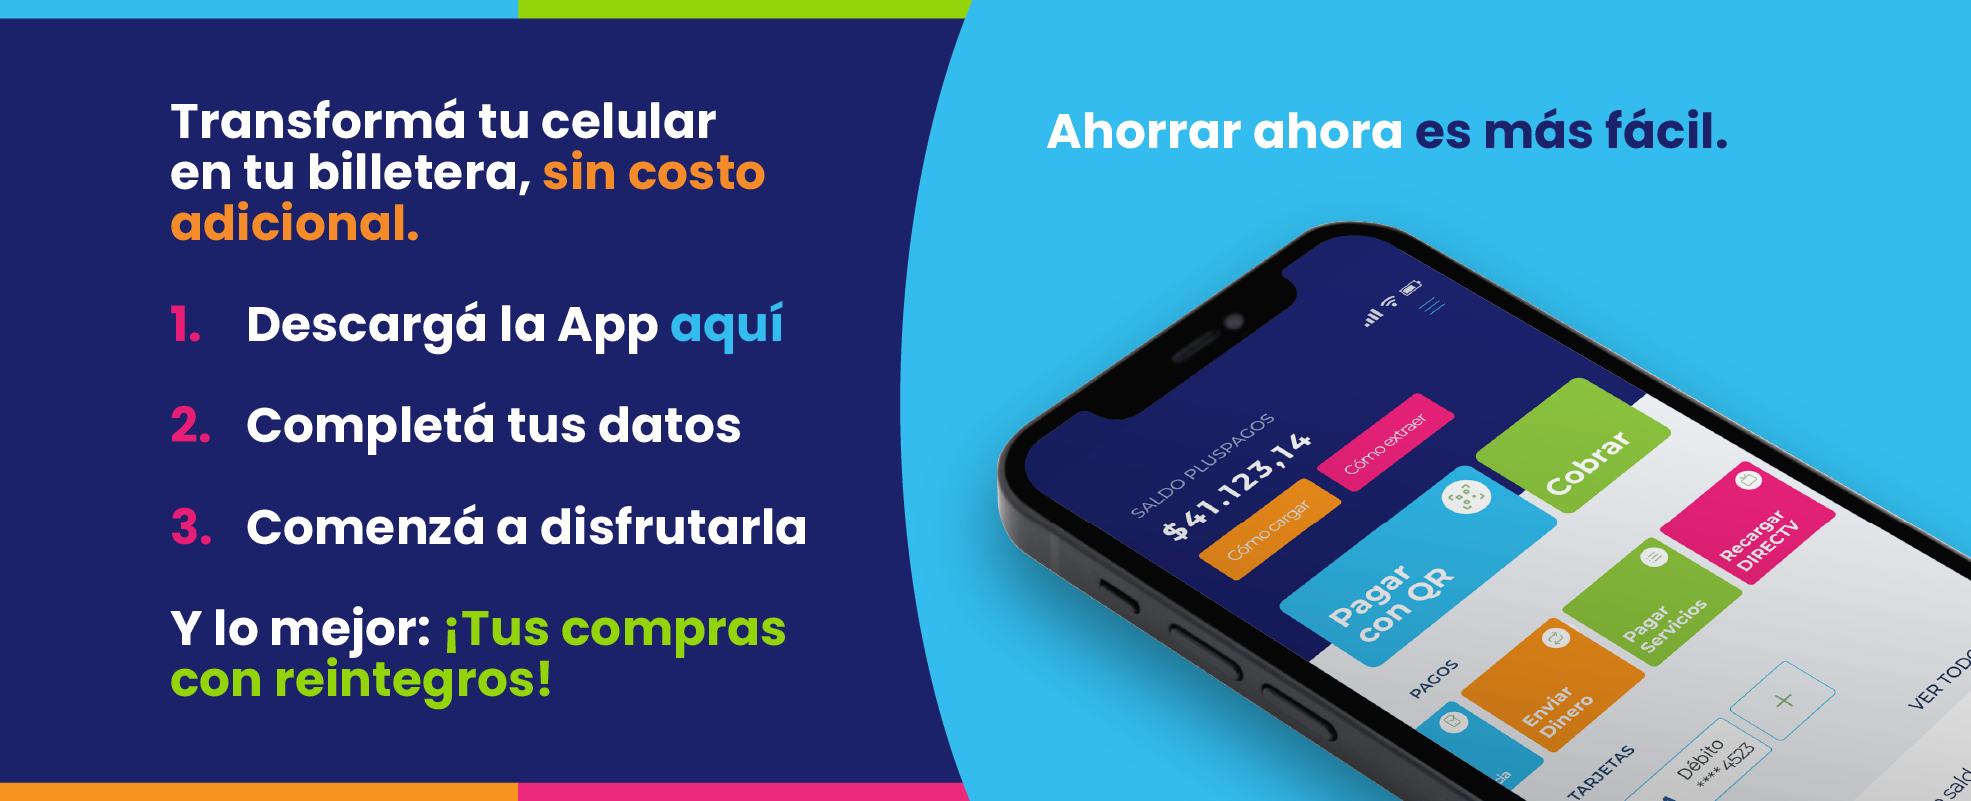 Transformá tu celular en tu billetera, sin costo adicional.
      1. Descargá la App aquí
      2. Completá tus datos
      3. Comenzá a disfrutarla
      Y lo mejor: ¡Tus compras con reintegros! Ahorrar ahora es más fácil.